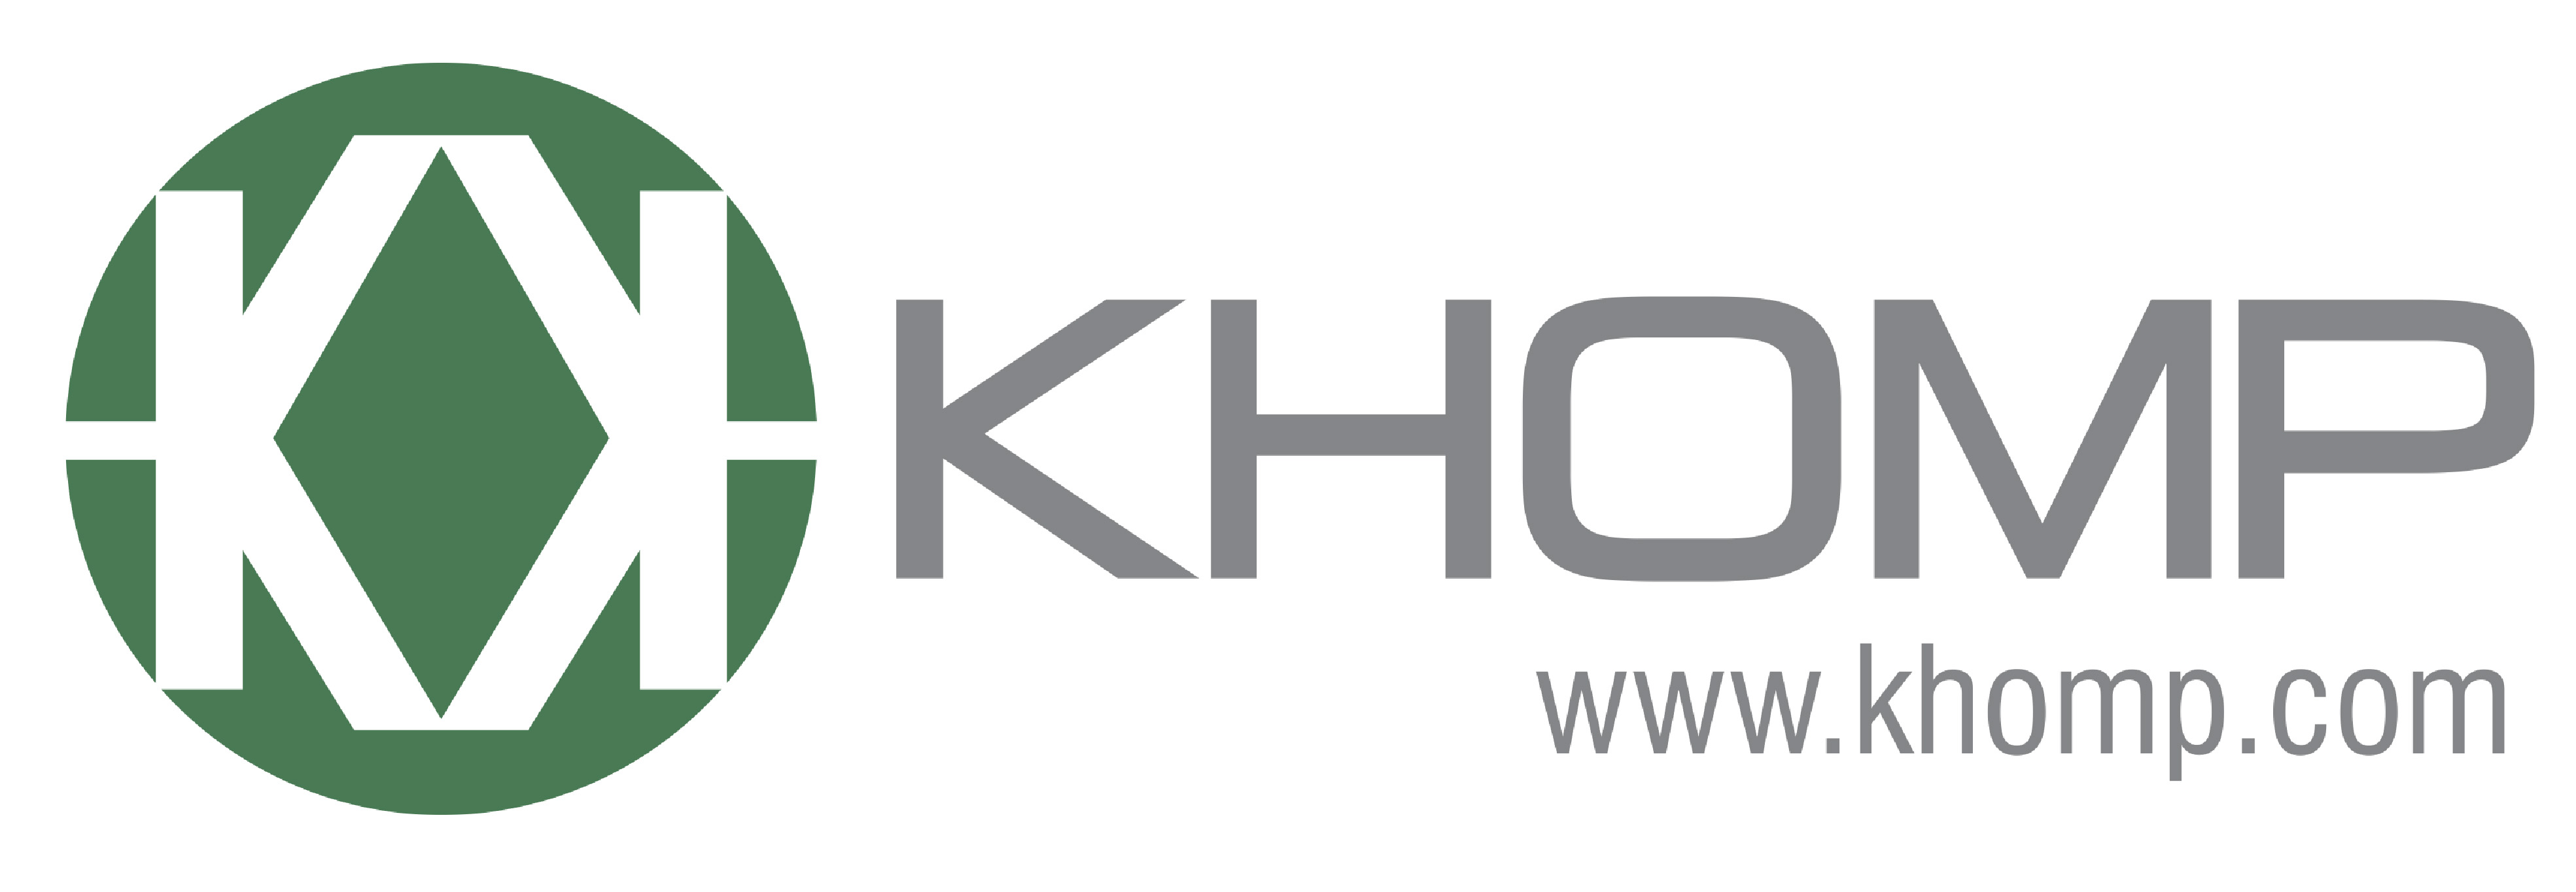 Khomp e Avaya anuncian asociación